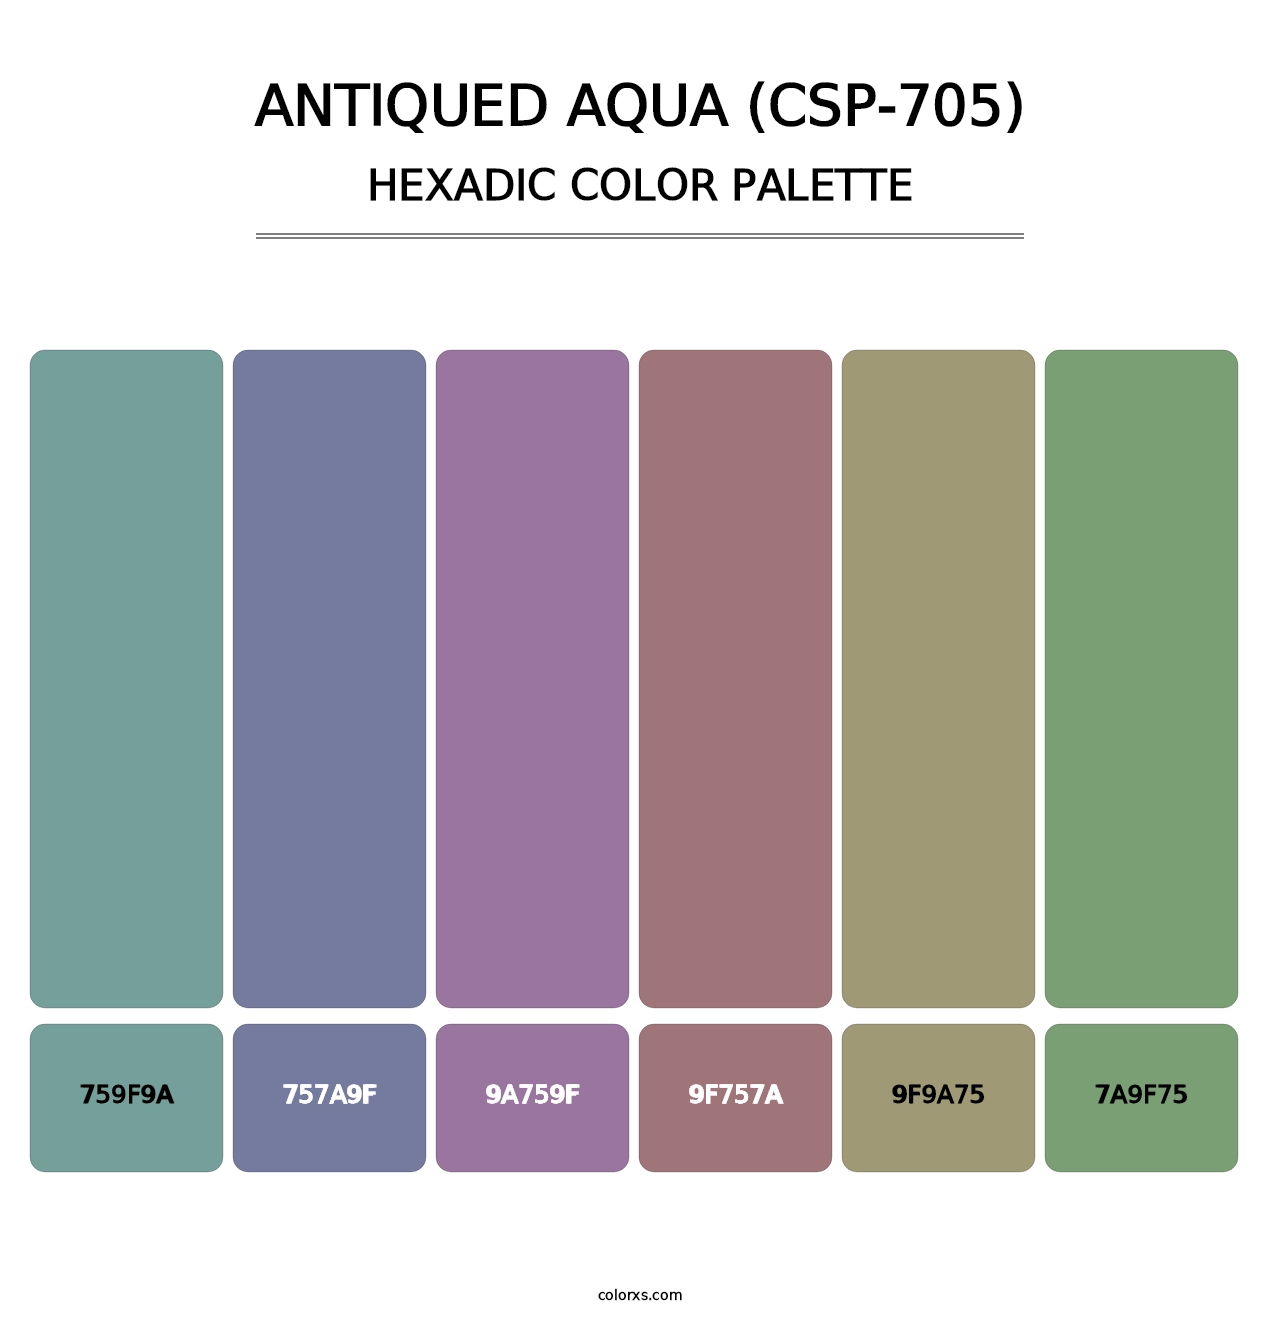 Antiqued Aqua (CSP-705) - Hexadic Color Palette